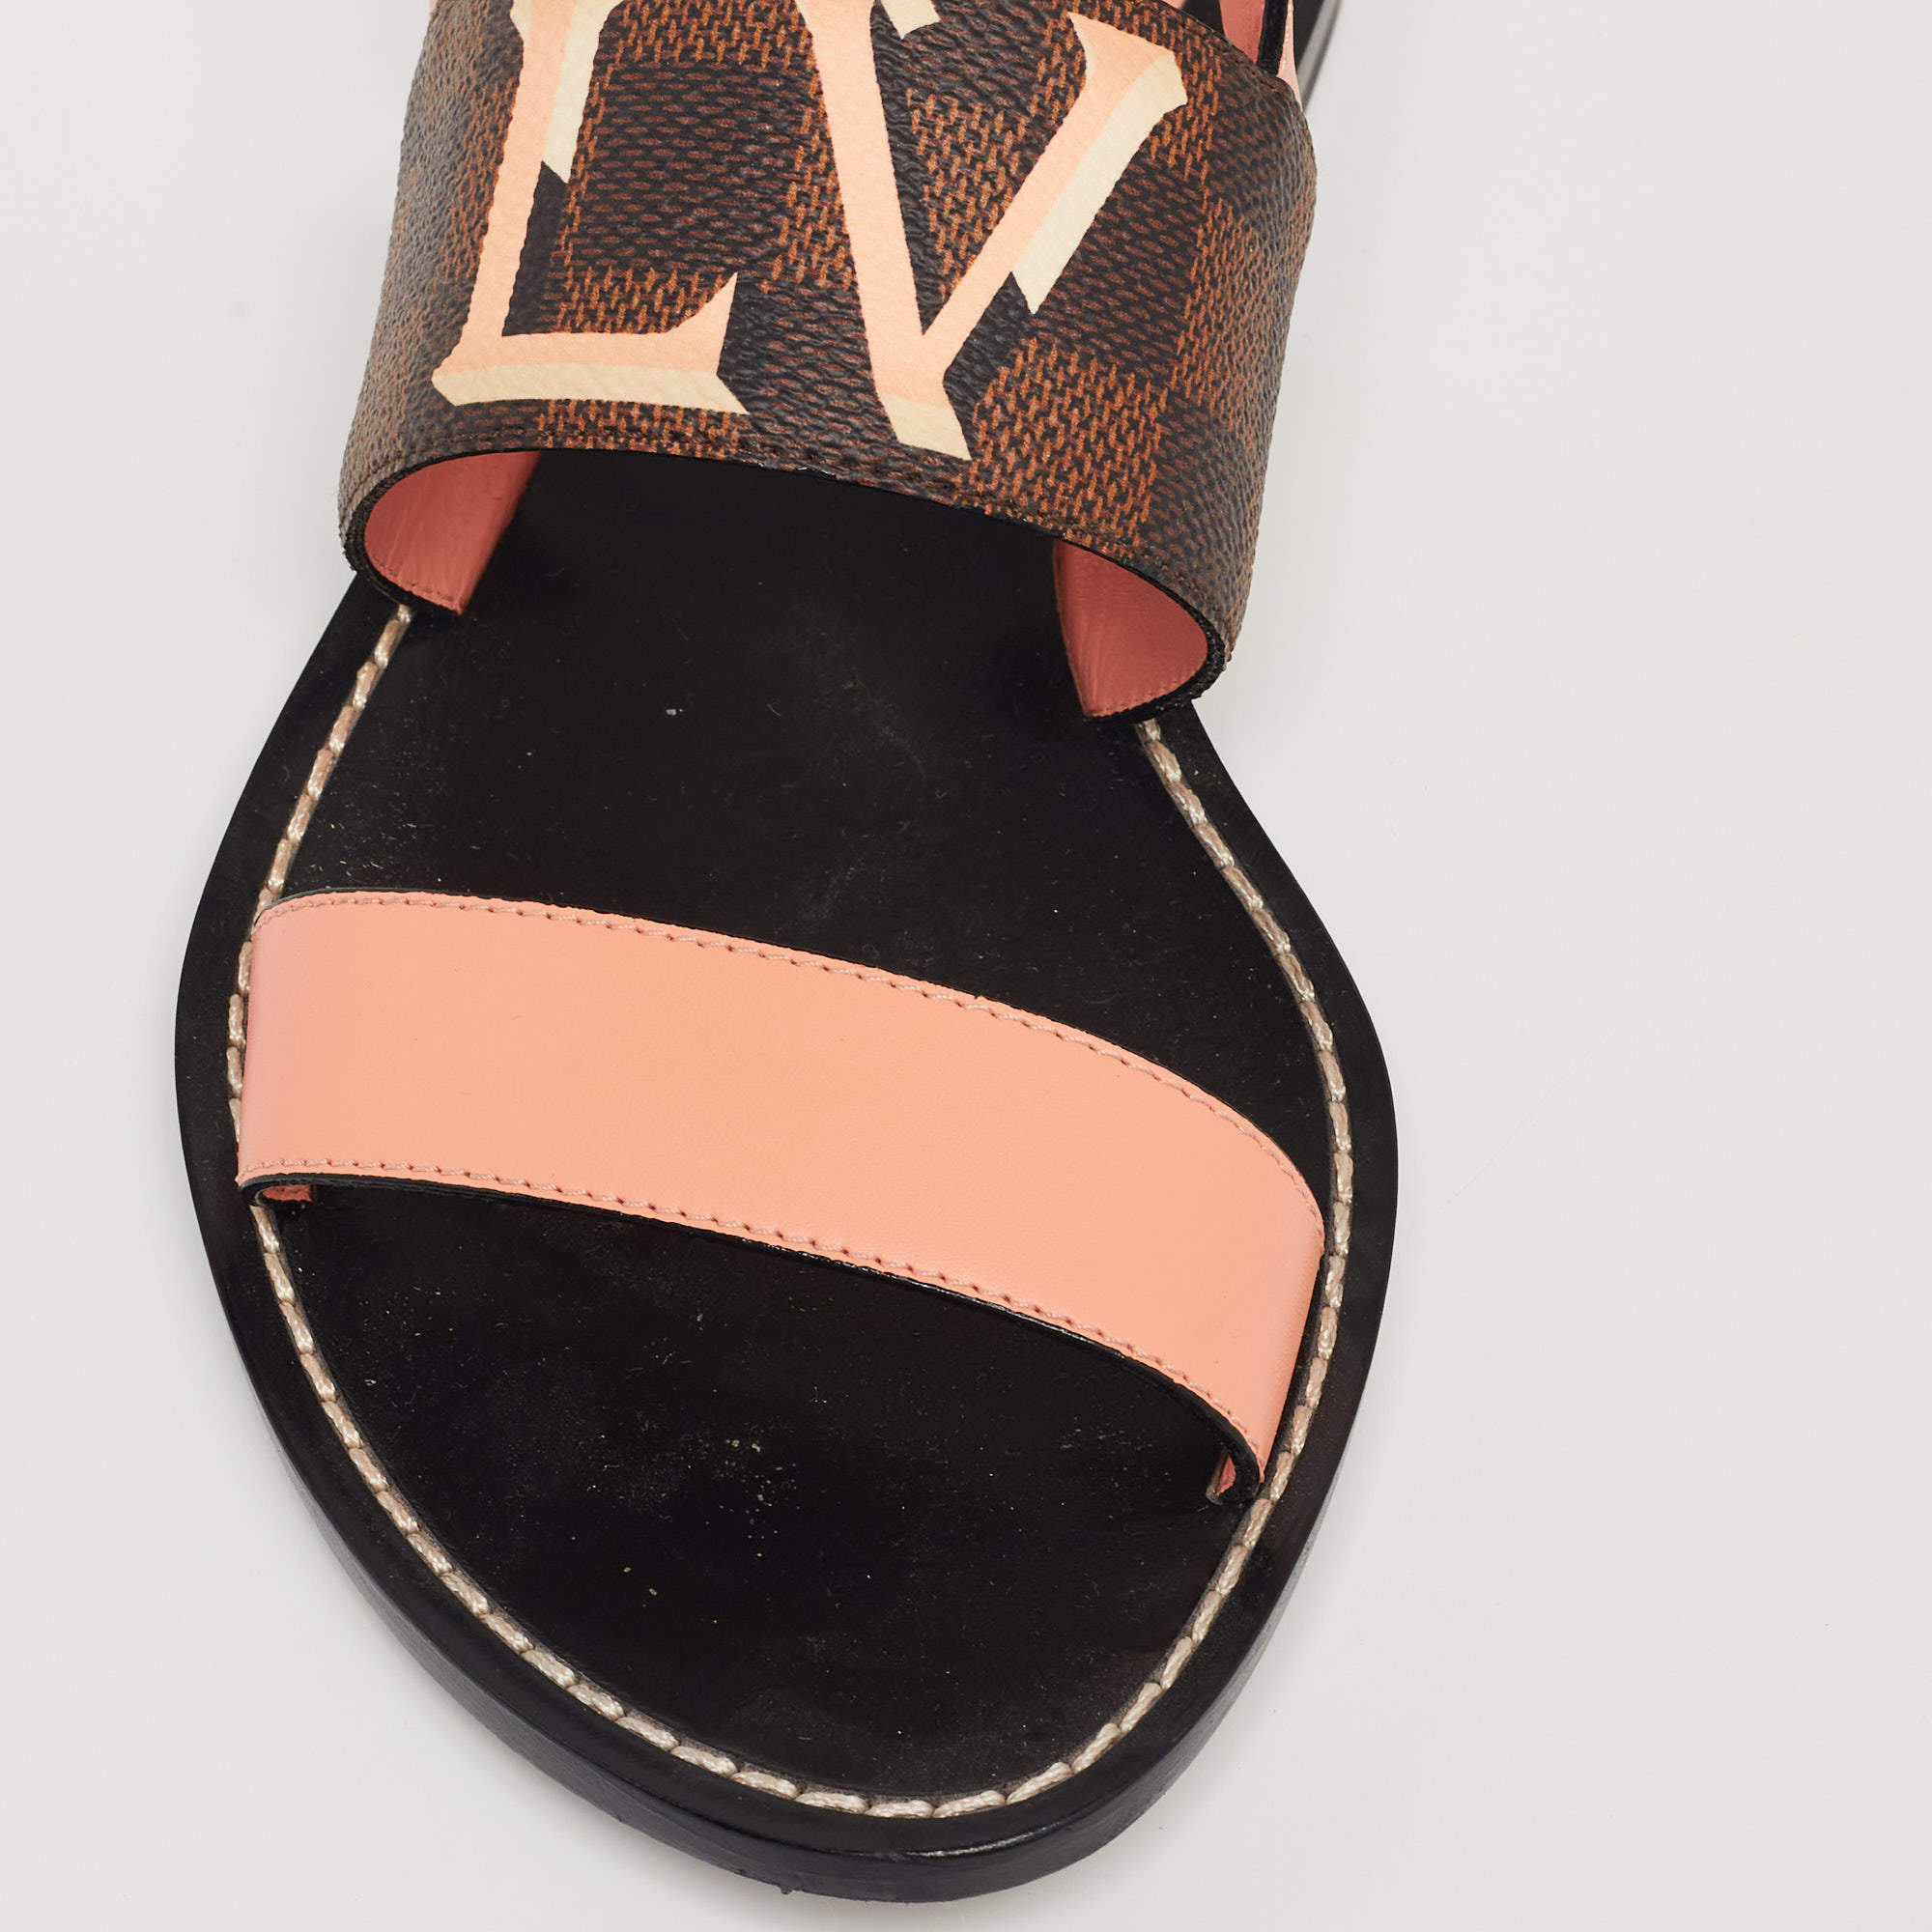 WMNS) LOUIS VUITTON shoes Passenger flat sandals 'Brown' 1A63ZX - KICKS CREW